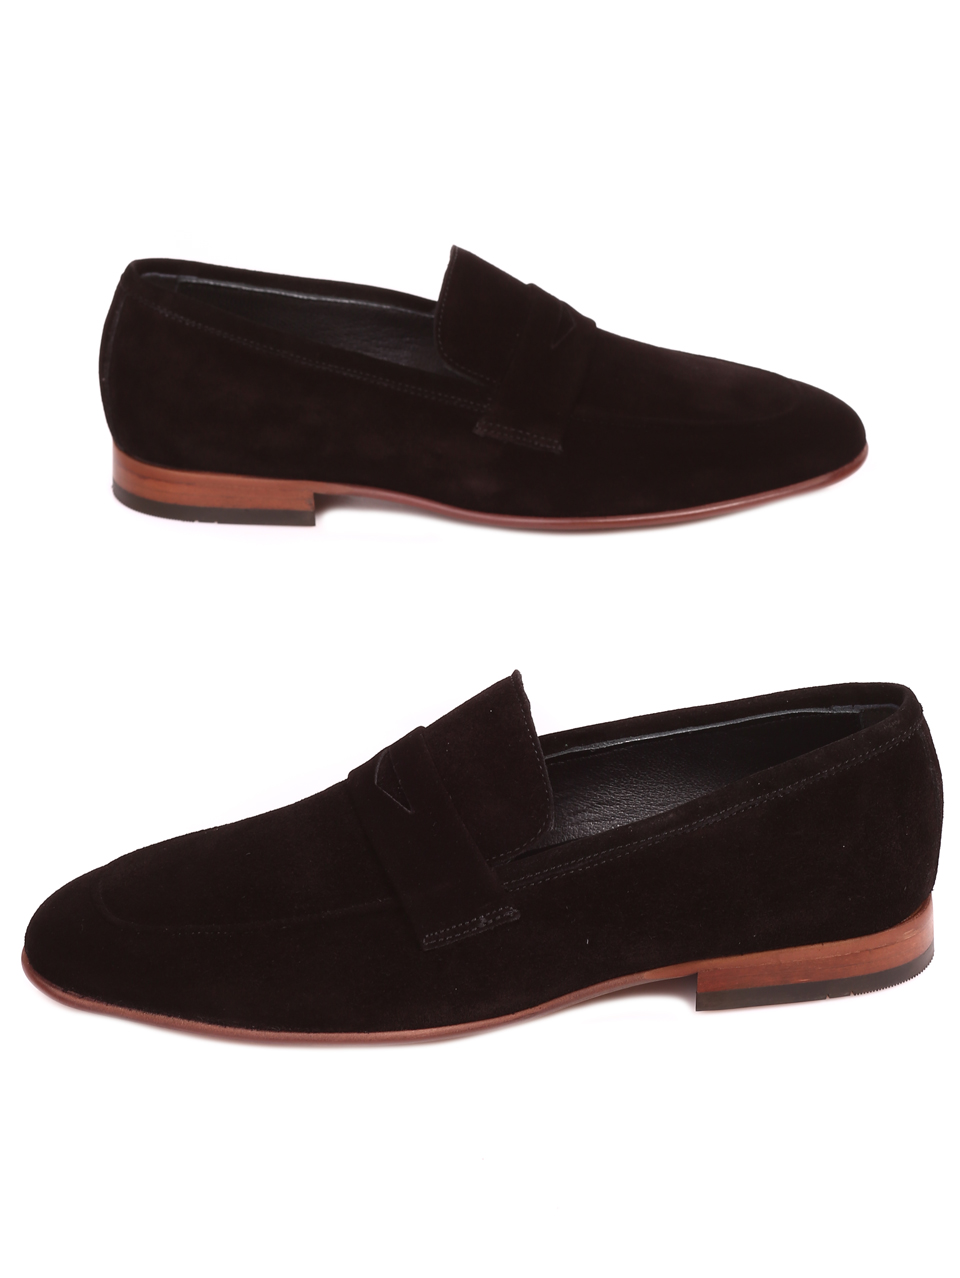 Ежедневни мъжки обувки от естествен велур 7AT-22278 black